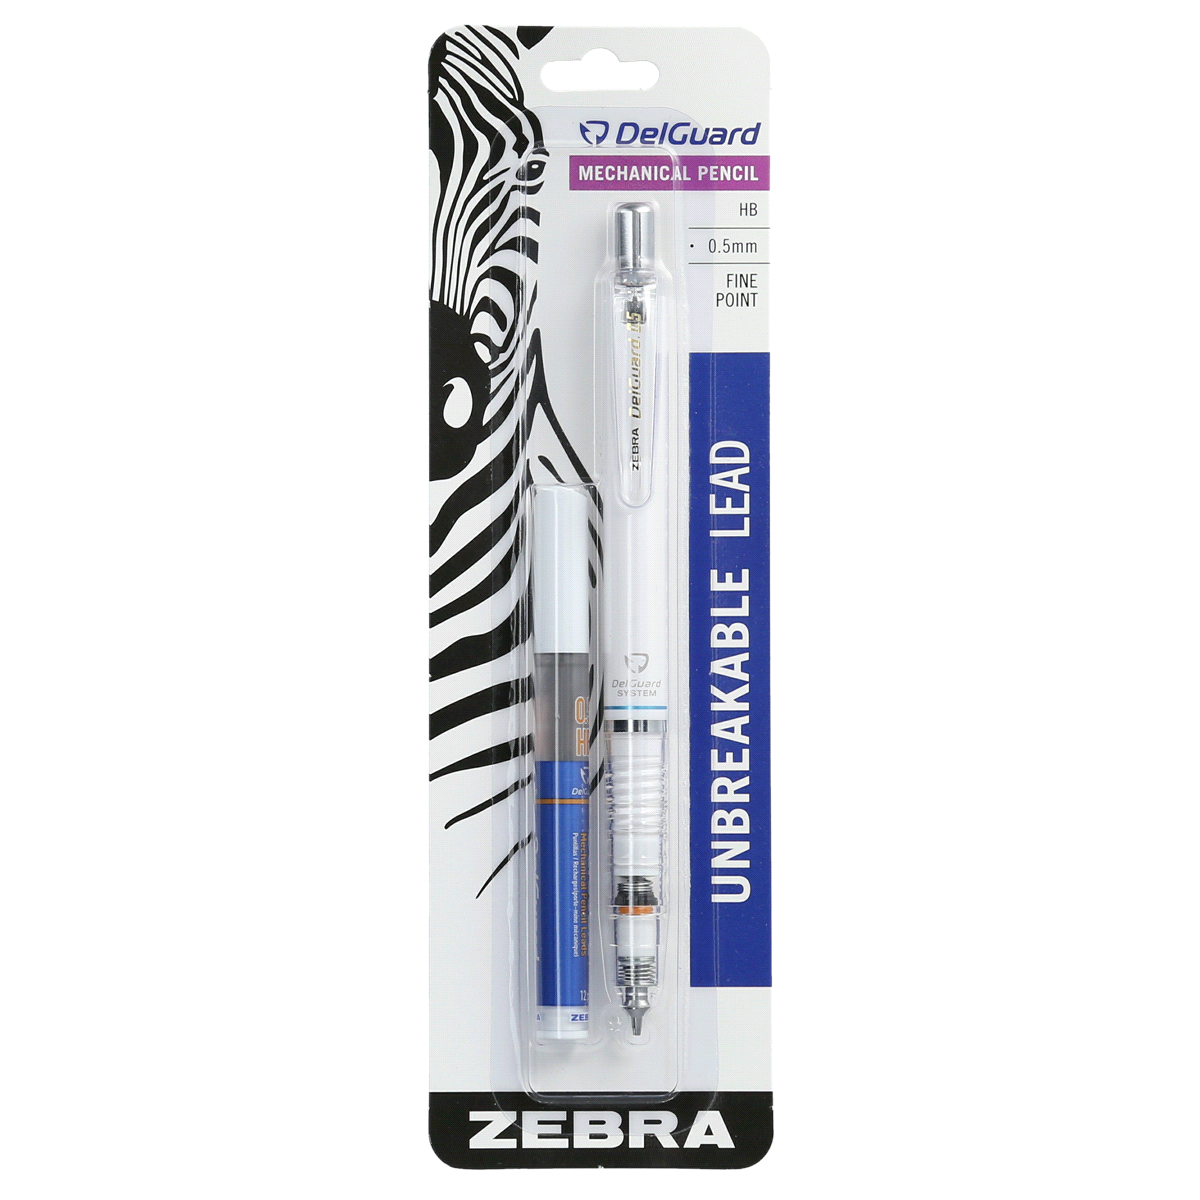 slide 1 of 1, Zebra Pen Delguard Fine Point Mechanical Pencil, 1 ct